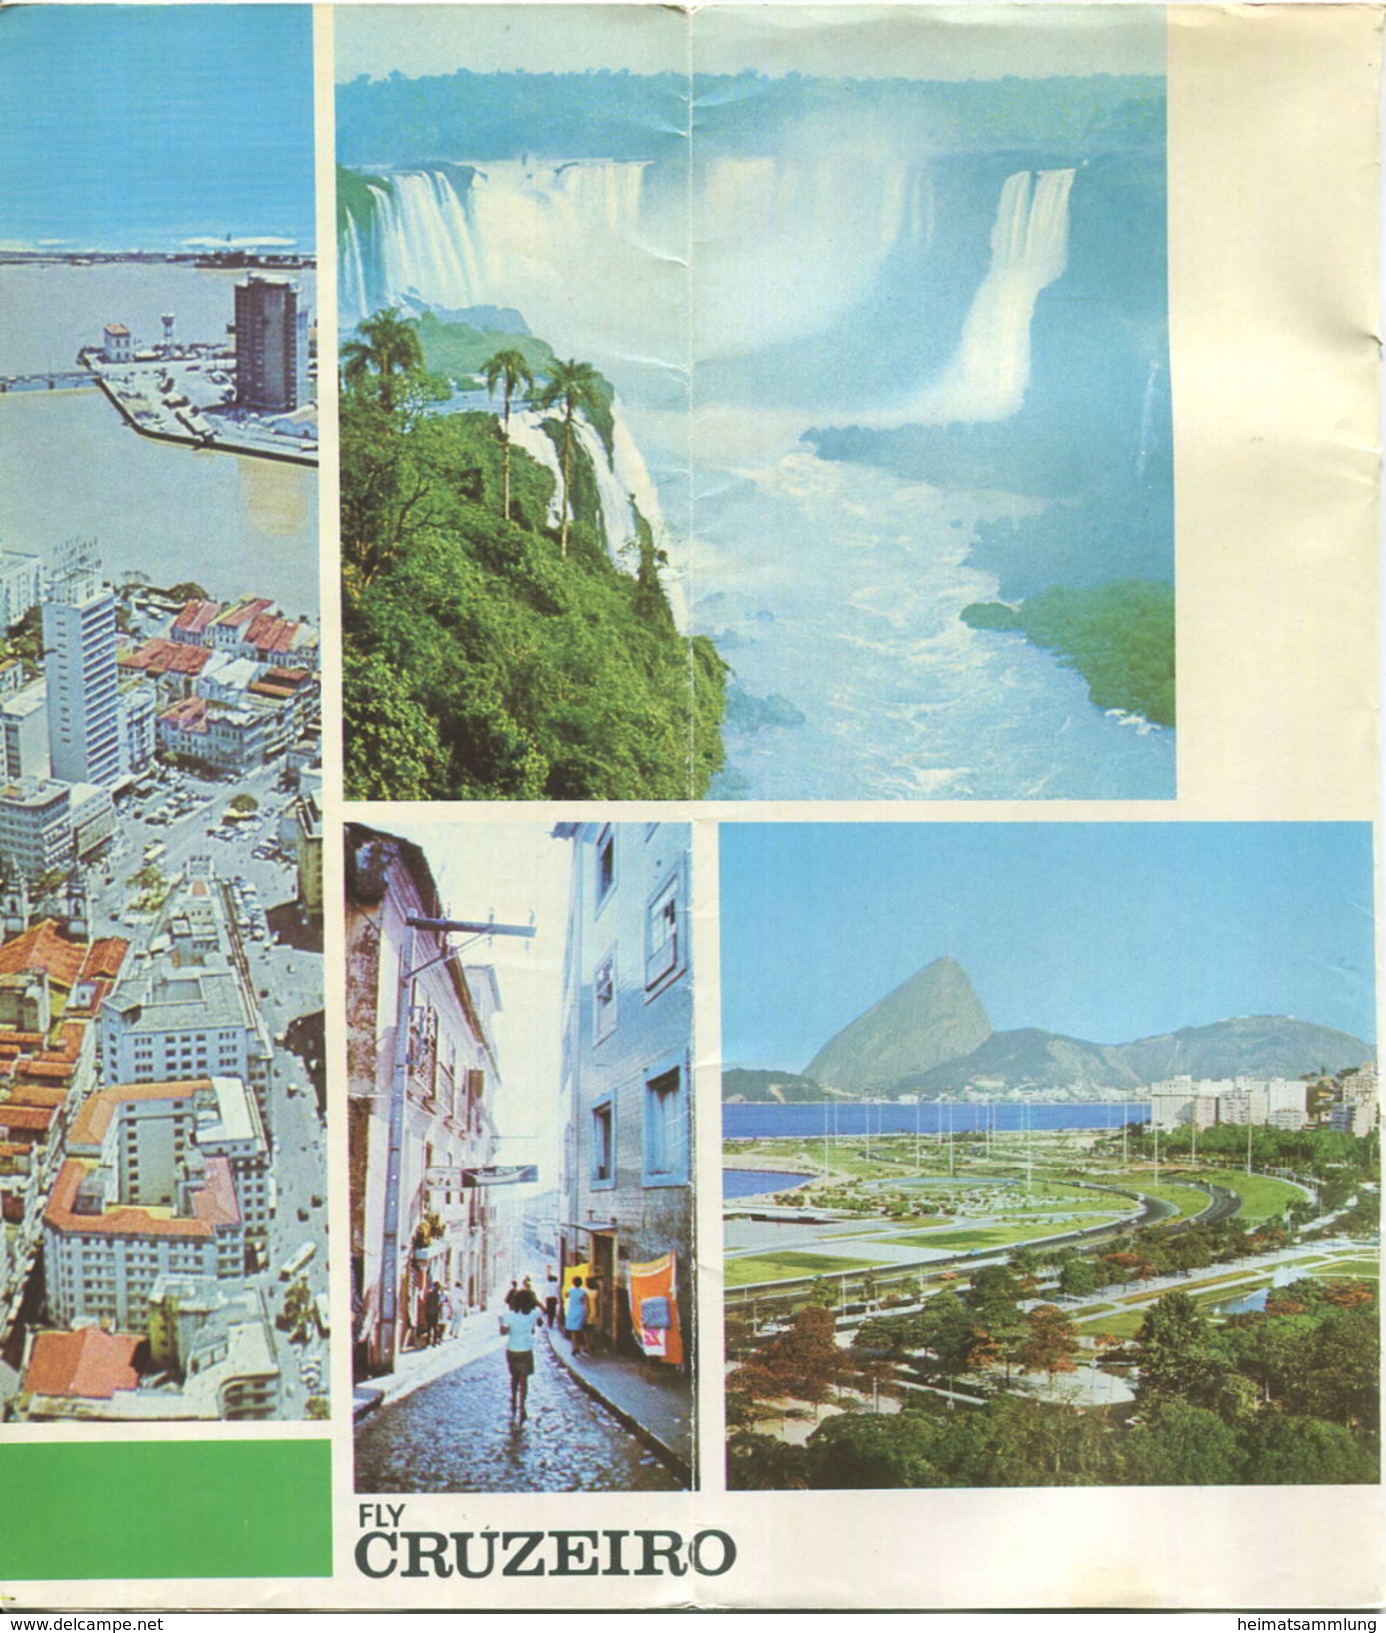 Brasil - Timetable Fly Cruzeiro 1970 - 8 Seiten Mit 10 Abbildungen - Flugdaten - Monde